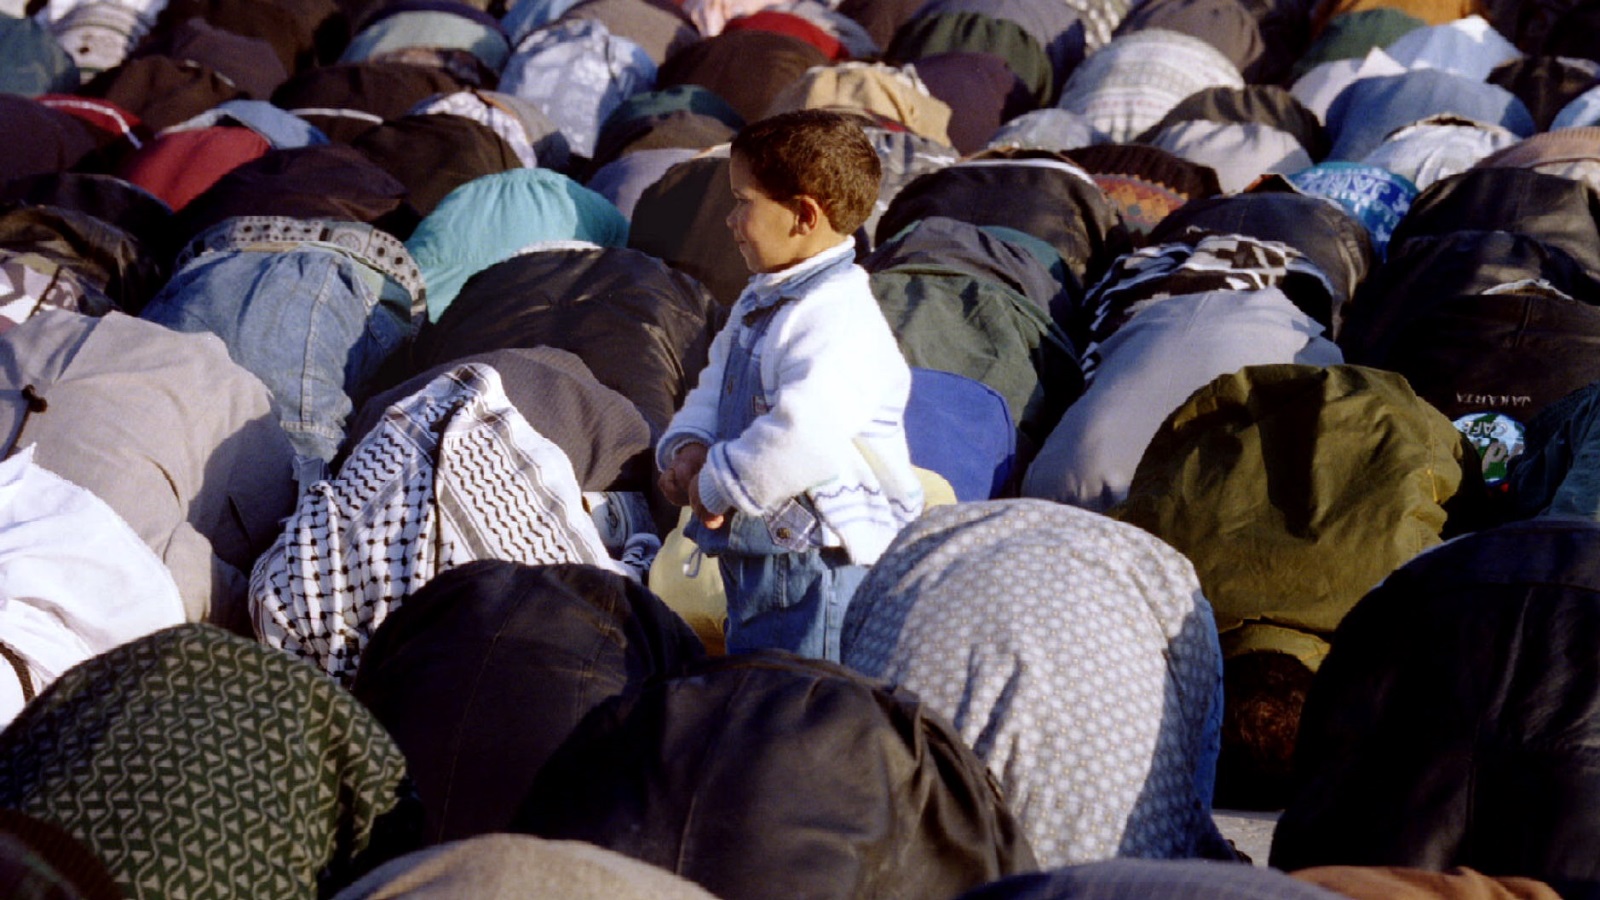 الجمعة في المسجد الأقصى عيد إسلامي يشترك فيه الرجال والنساء والأطفال؛ الآباء والأمهات في صلاة، والأطفال في رحاب الحرم يمرحون